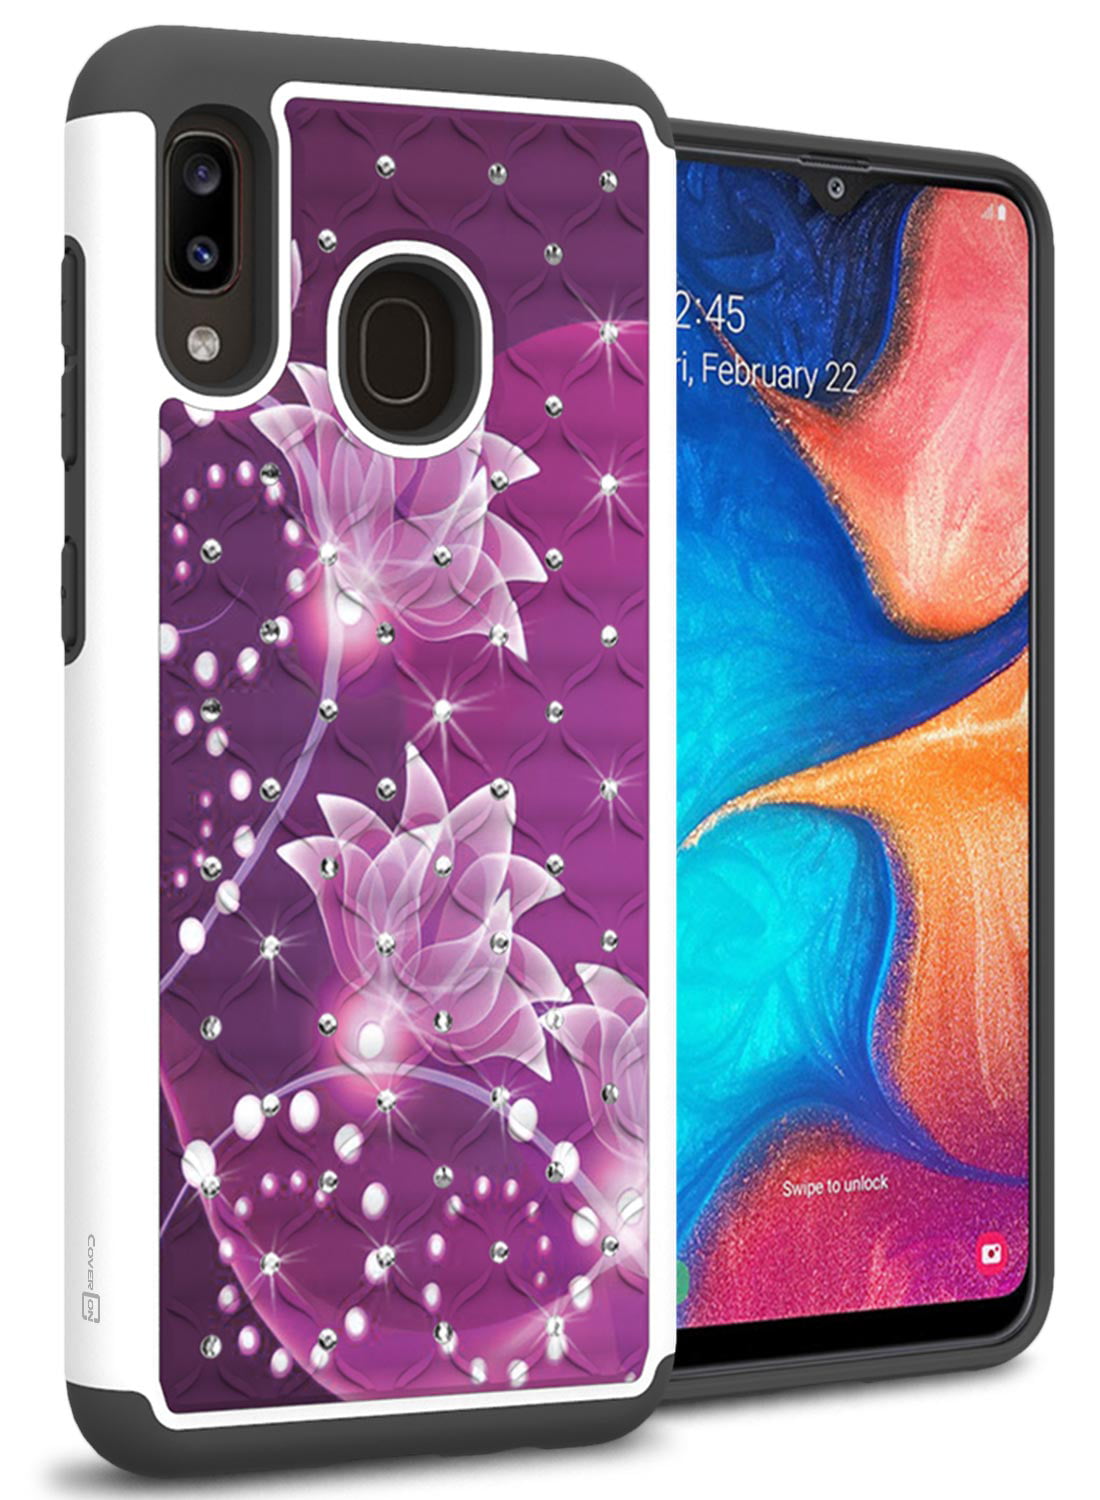 CoverON Samsung Galaxy A30 / Galaxy A20 Case, Aurora Series Rhinestone Phone Cover